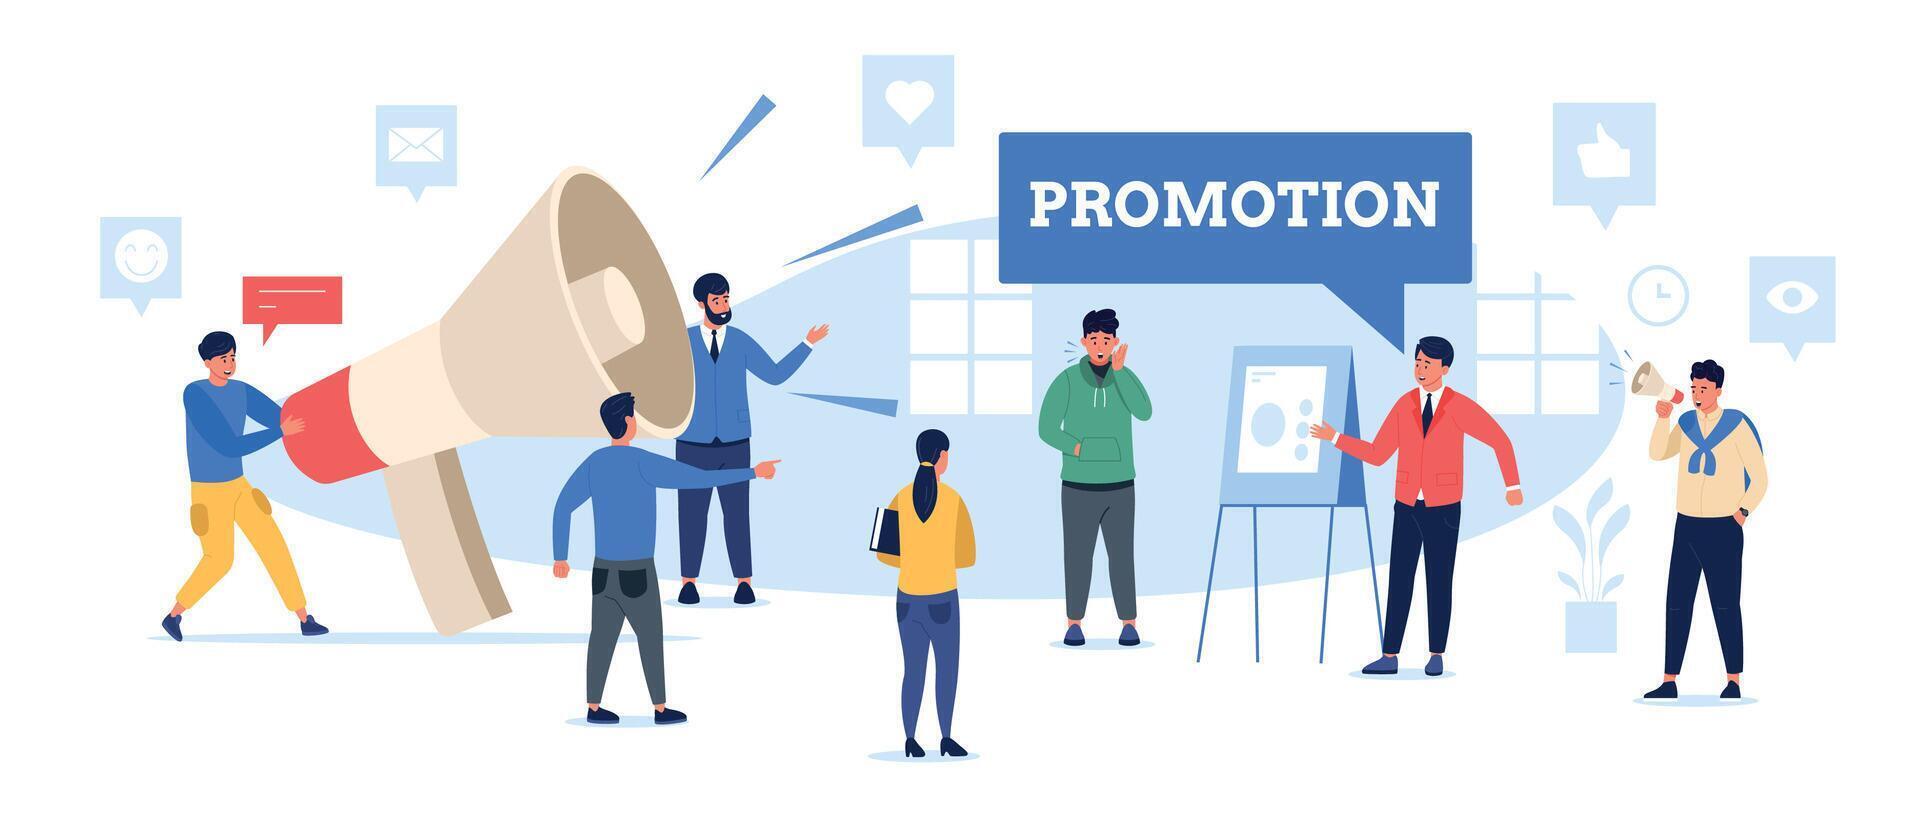 Promotion loudspeaker concept. People with megaphone promote announce, public speaking digital marketing presentation banner design. Vector illustration